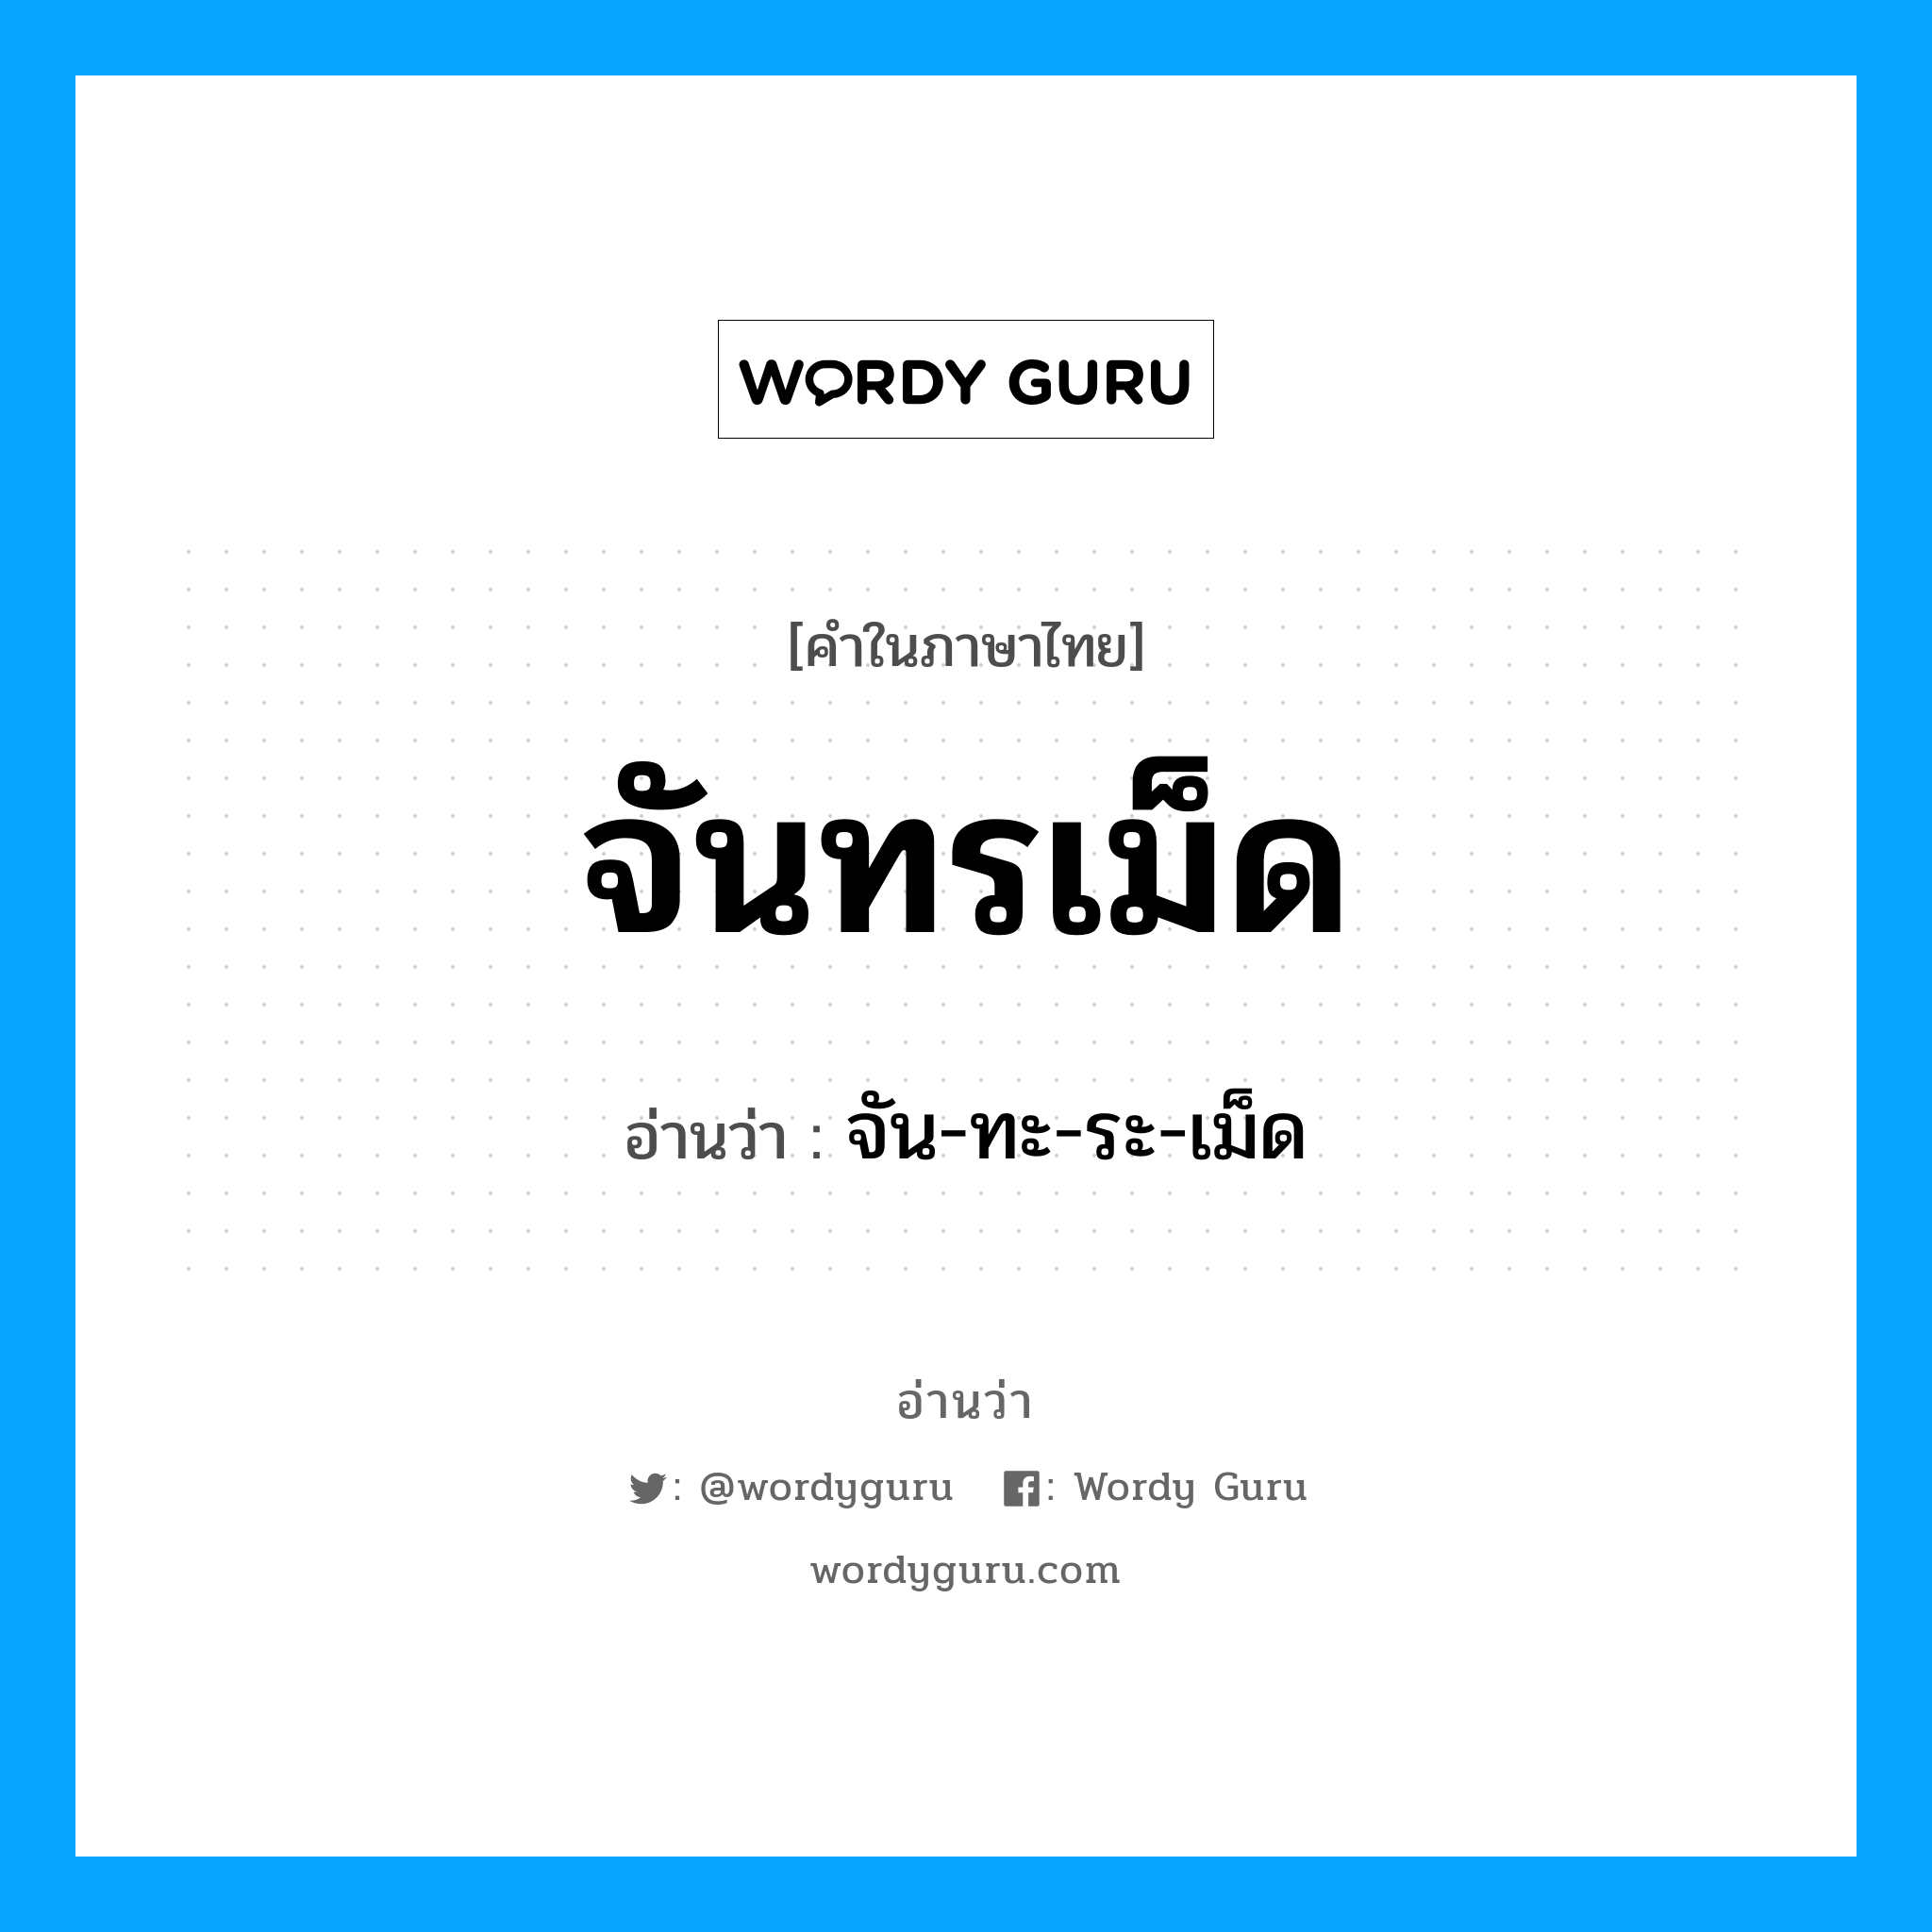 จัน-ทะ-ระ-เม็ด เป็นคำอ่านของคำไหน?, คำในภาษาไทย จัน-ทะ-ระ-เม็ด อ่านว่า จันทรเม็ด